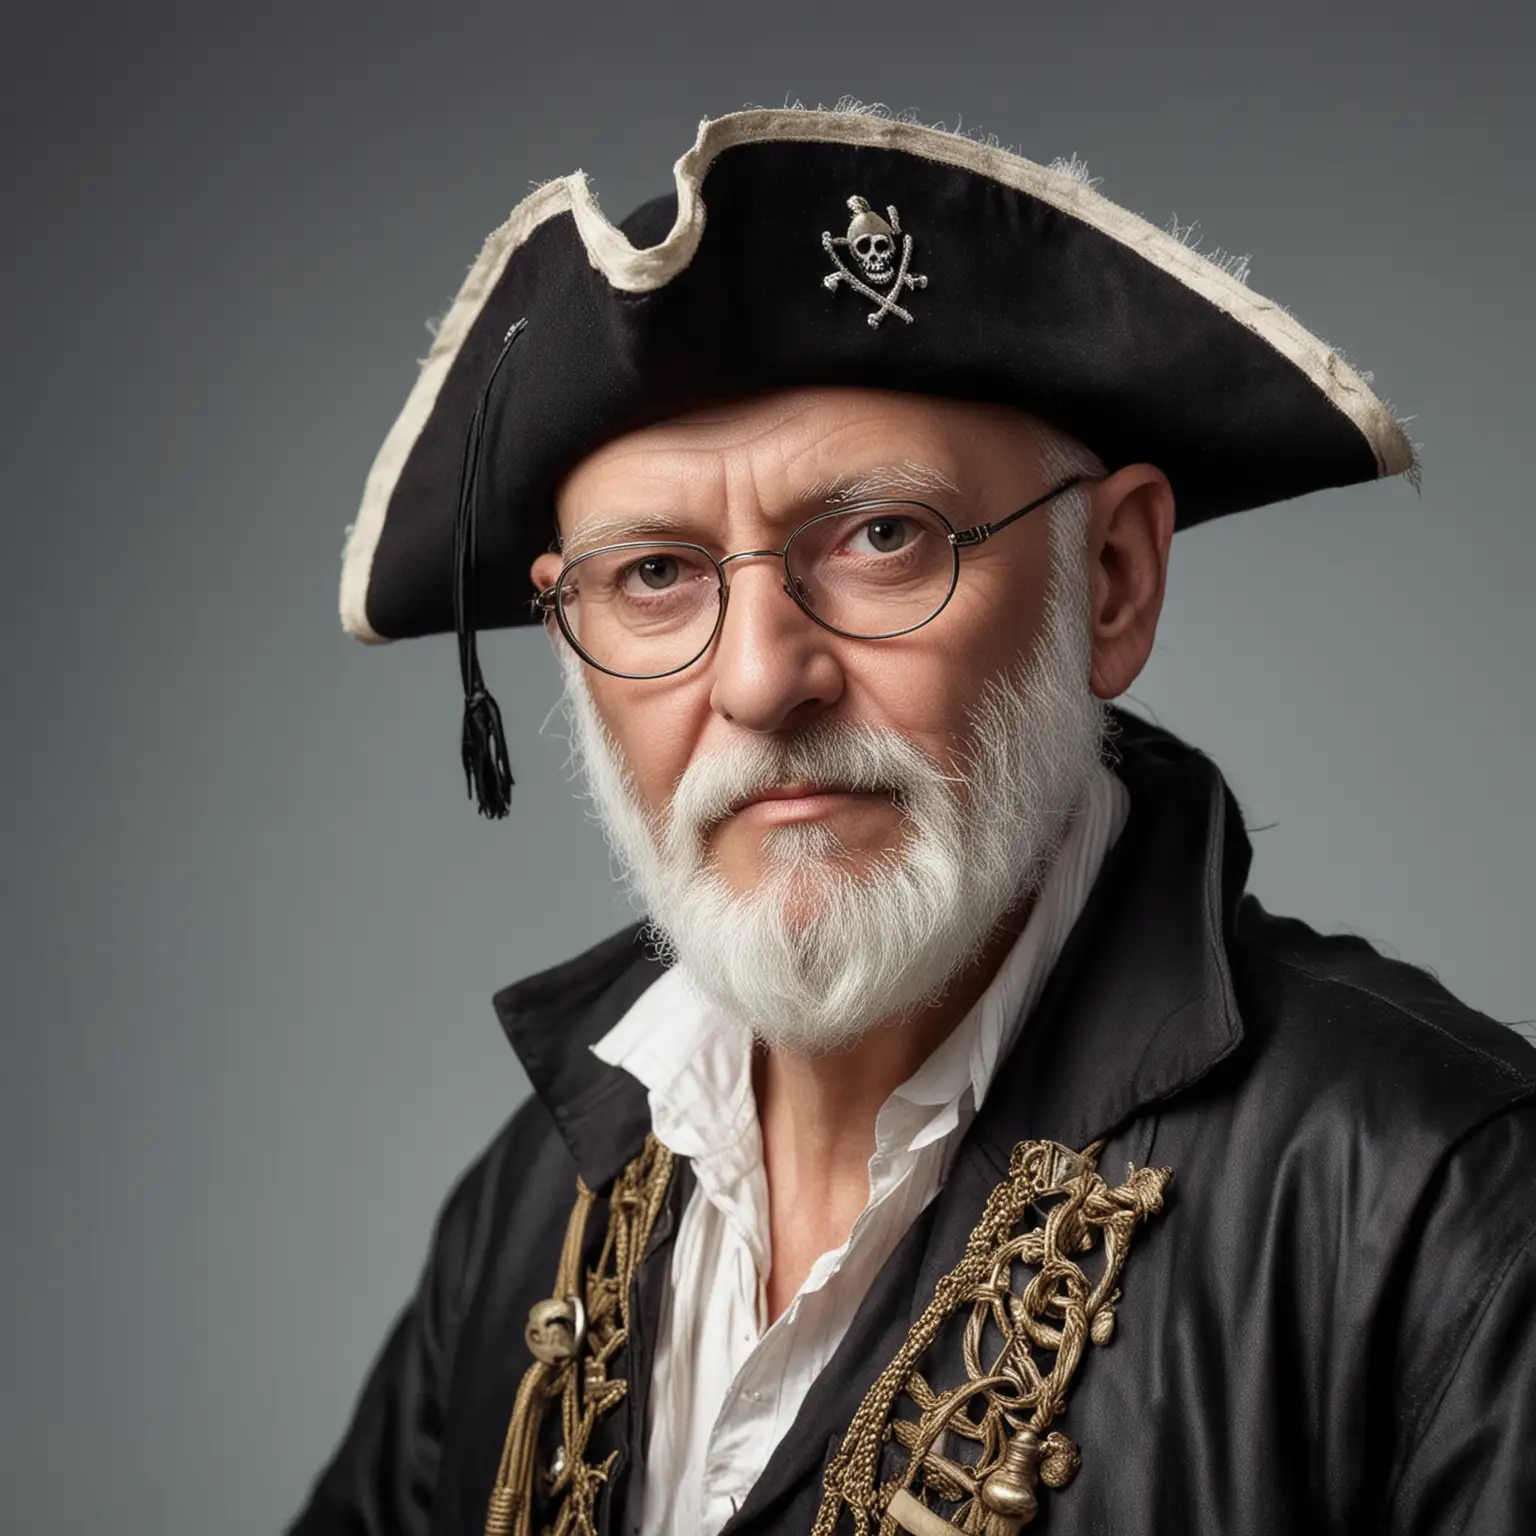 un homme de 58 ans, petites lunettes, petite barbe blanche fine, dégarni, il est habillé en pirate, photographie, réaliste